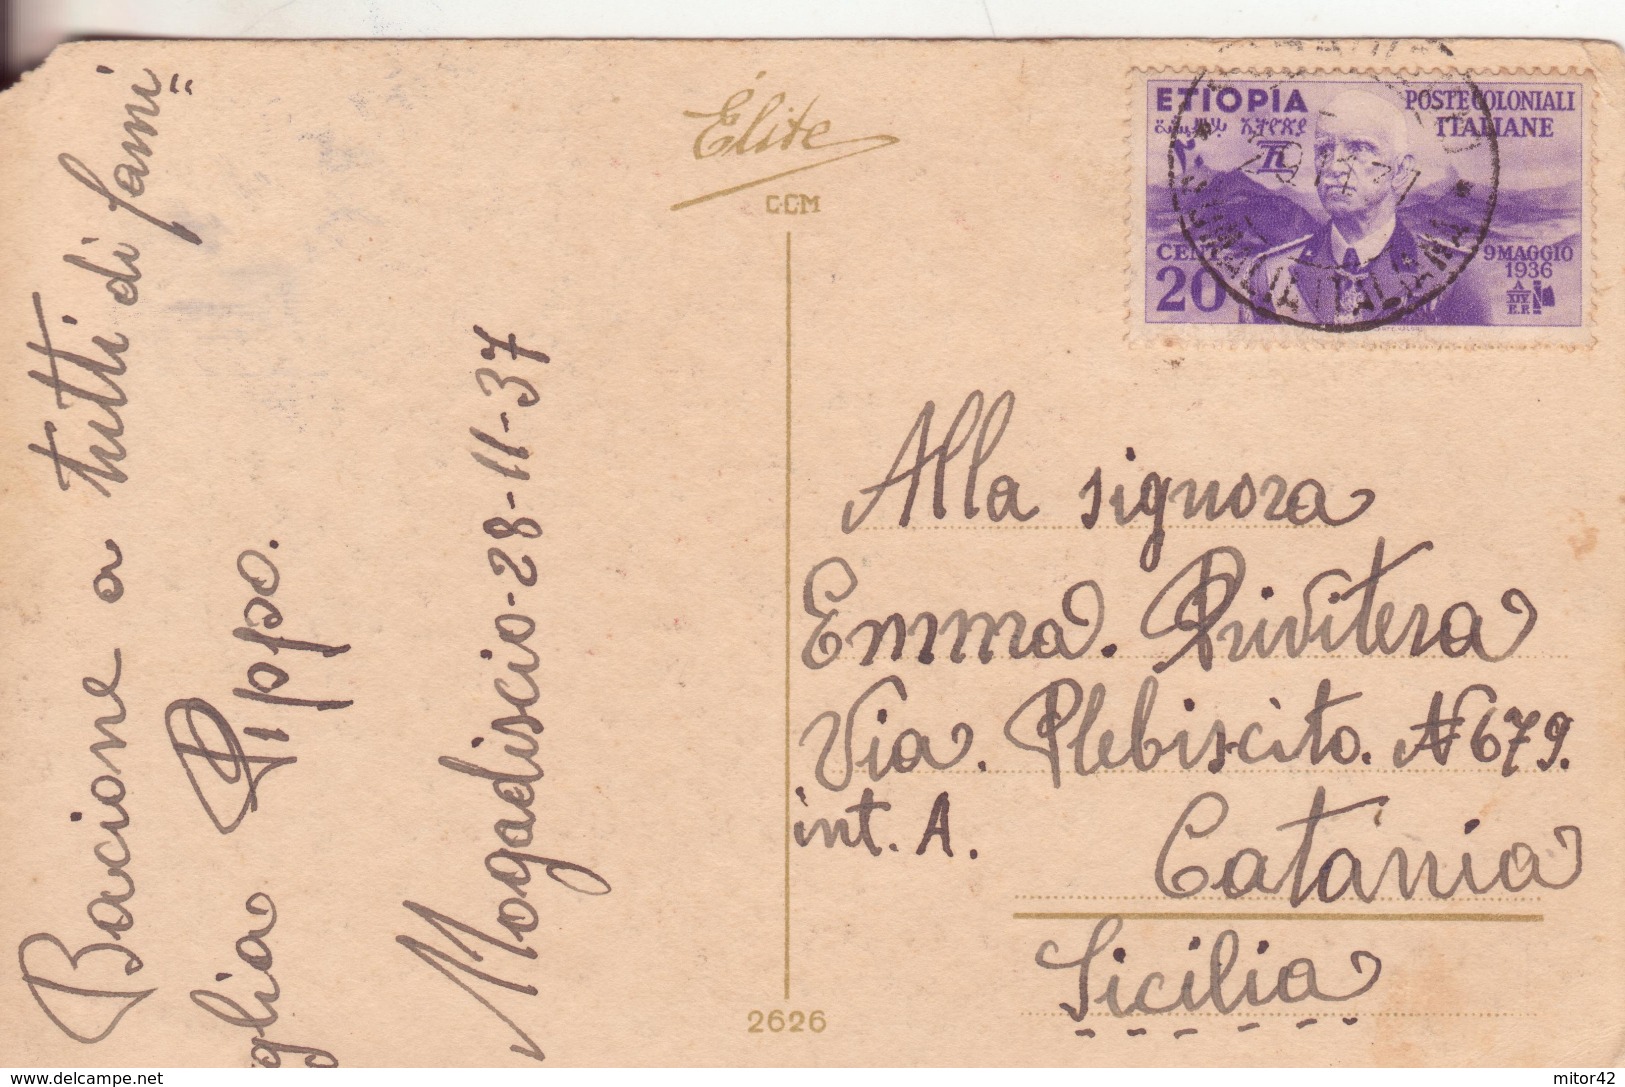 160-Etiopia-Ex Colonia Italiana-Colonie-Storia Postale 20c.Vittorio Emanuele Di Savoia-1937-Alto Valore Catalogo - Ethiopie